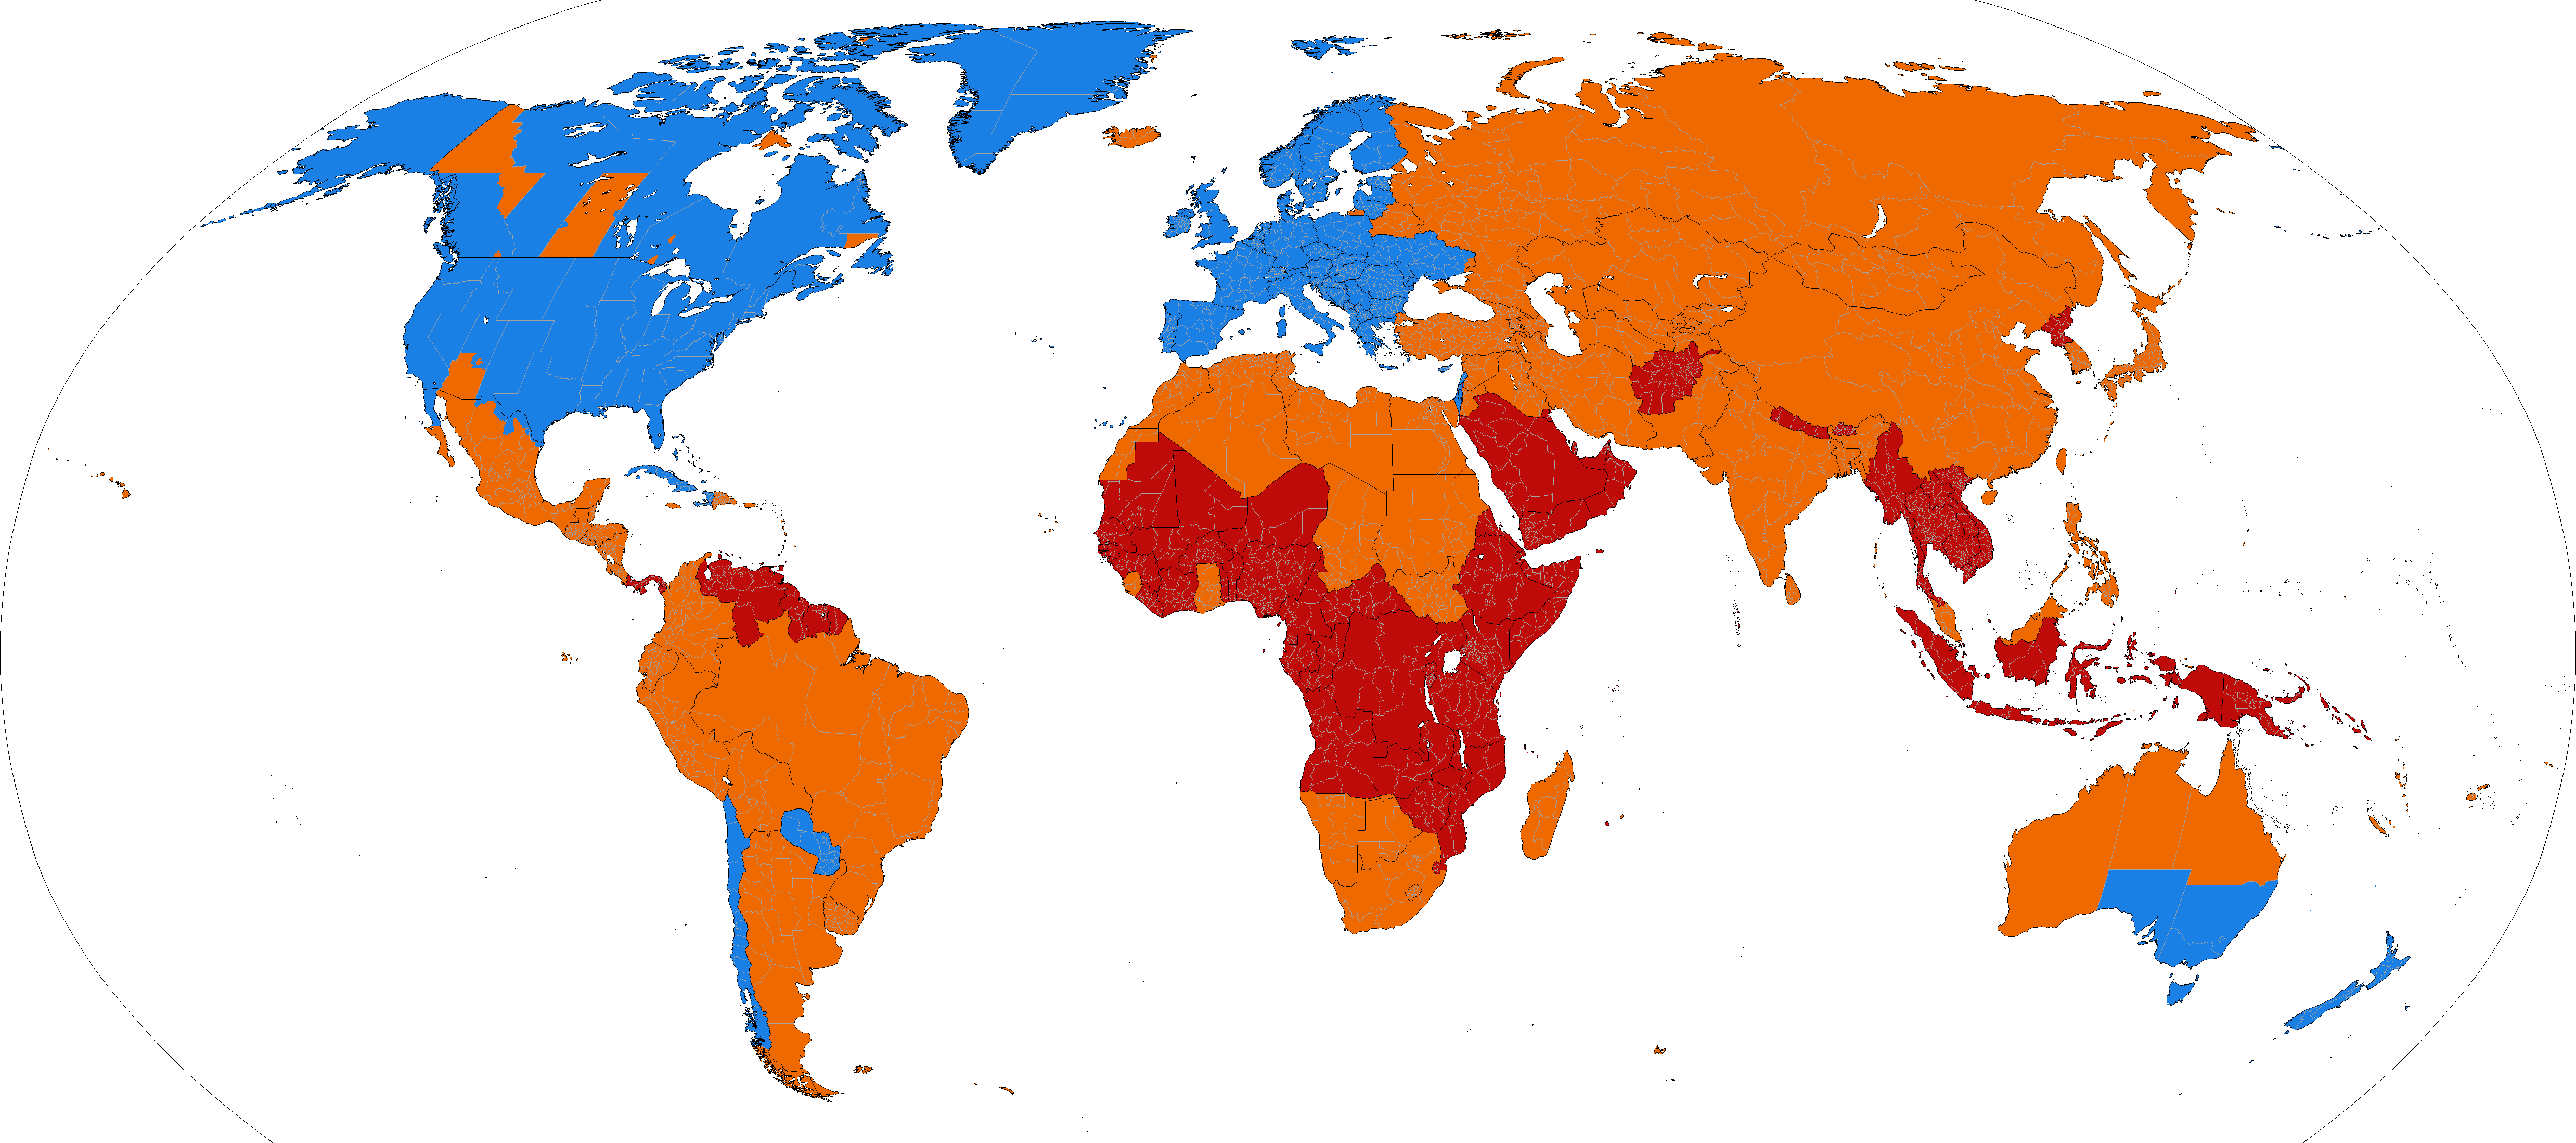 Sommerzeit - Blau, Länder verwenden die Sommerzeit - Orange, Länder verwendeten die Sommerzeit - Rot, Länder haben die Sommerzeit noch nie verwendet (Paul Eggert, CC BY-SA 3.0, via Wikimedia Commons)